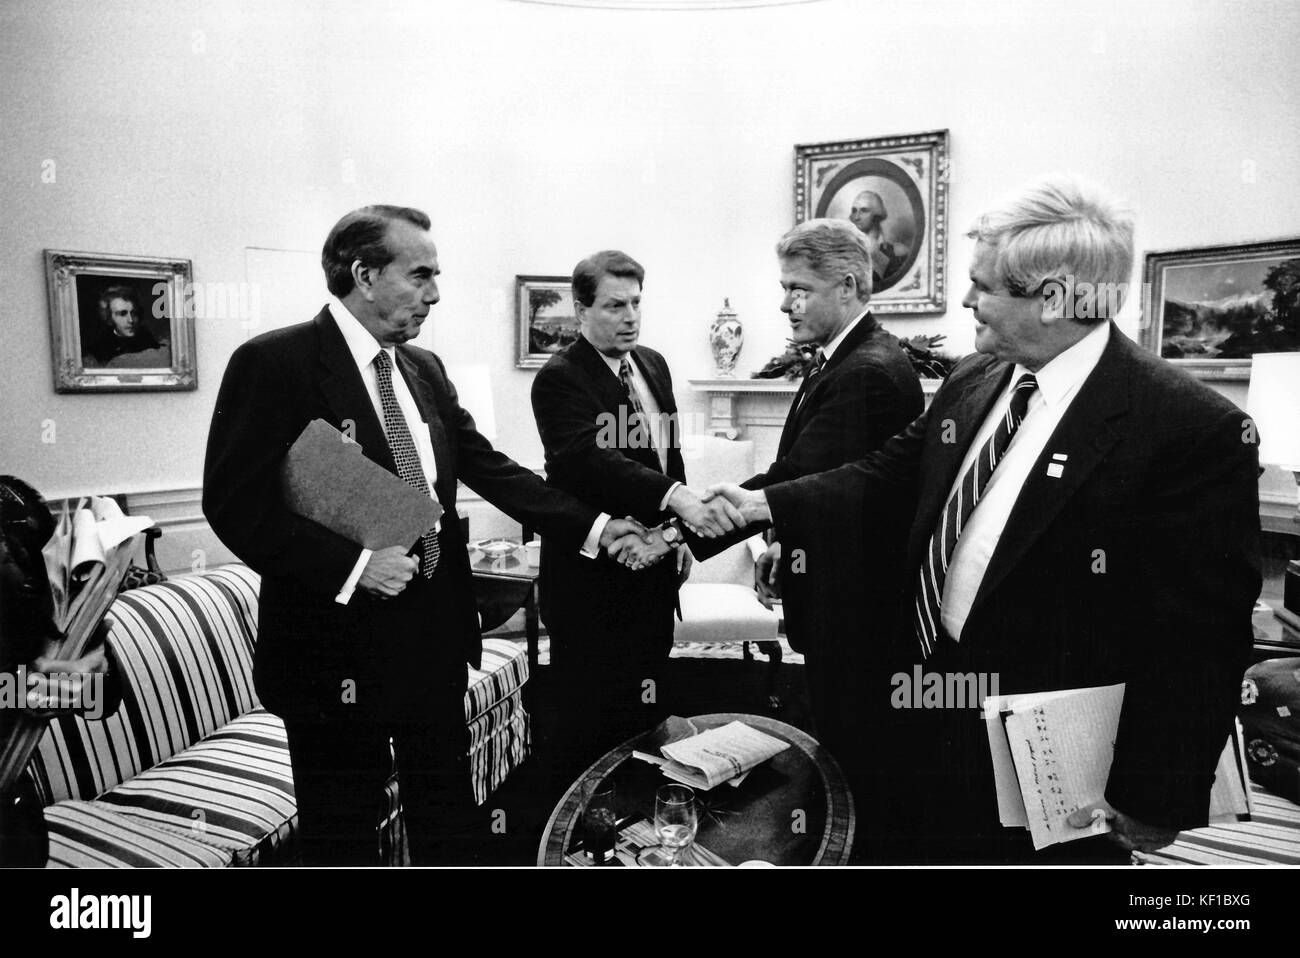 Präsidenten der Vereinigten Staaten Bill Clinton, rechts Mitte, schüttelt Hände mit uns Mehrheitsführer im Senat, Bob Dole (Republikaner von Kansas), Links, als US-Vizepräsident Al Gore, Mitte links, schüttelt Hände mit der Sprecherin des US-Repräsentantenhauses Newt Gingrich (Republikaner für Georgien), rechts, im Oval Office des Weißen Hauses in Washington, Dc am 19. Dezember 1995. Während des Treffens der Staats- und Regierungschefs vereinbart, gemeinsam zu arbeiten, um eine 7-jährige ausgeglichenen Haushalts plan der teilweisen Schließung des Bundes zu Ende zu erstellen. Obligatorische Credit: Robert mcneely/White House über cnp - keine Leitung Service Stockfoto